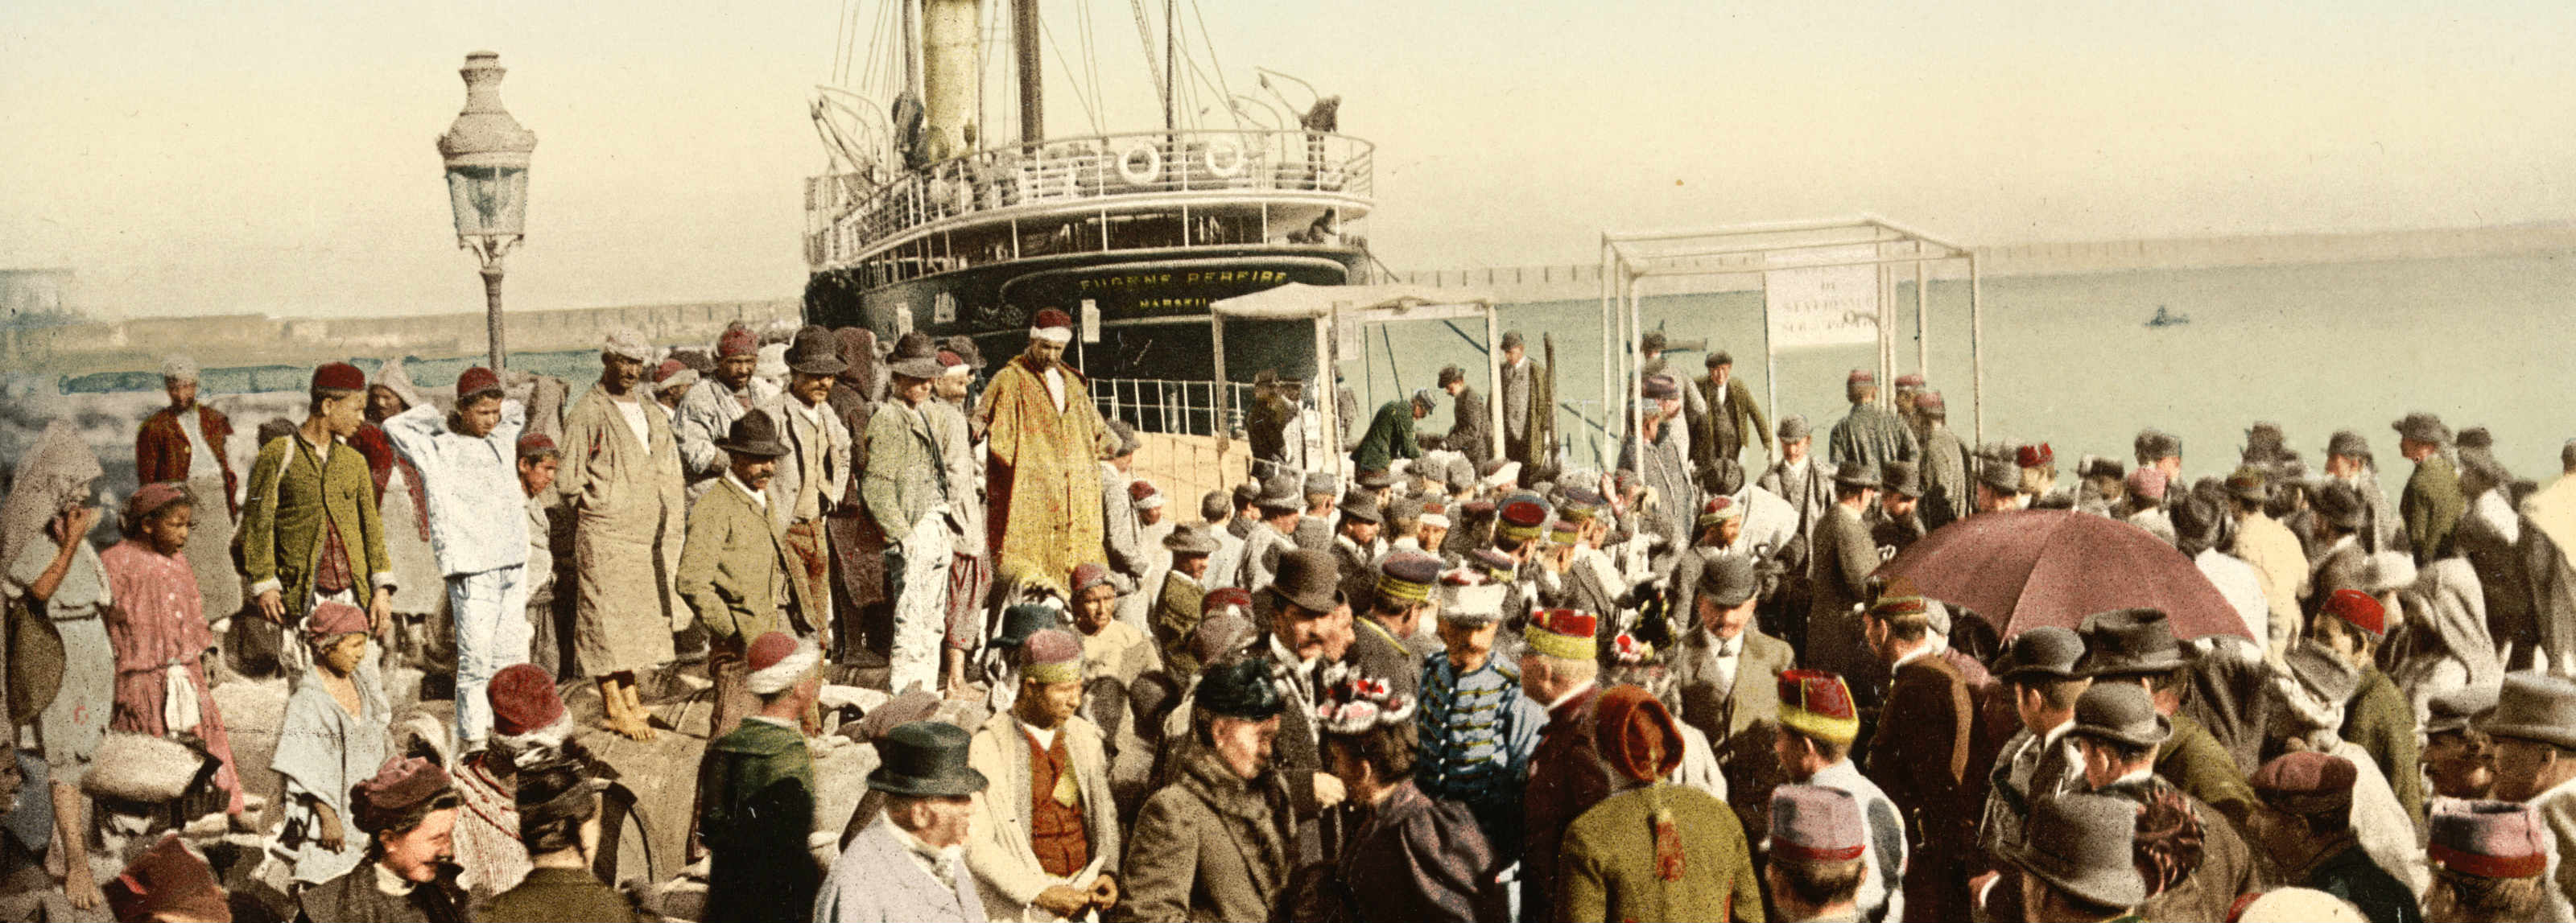 Europeans disembarking in Algiers by steam boat in 1899 (Detroit Publishing Co., Public domain)